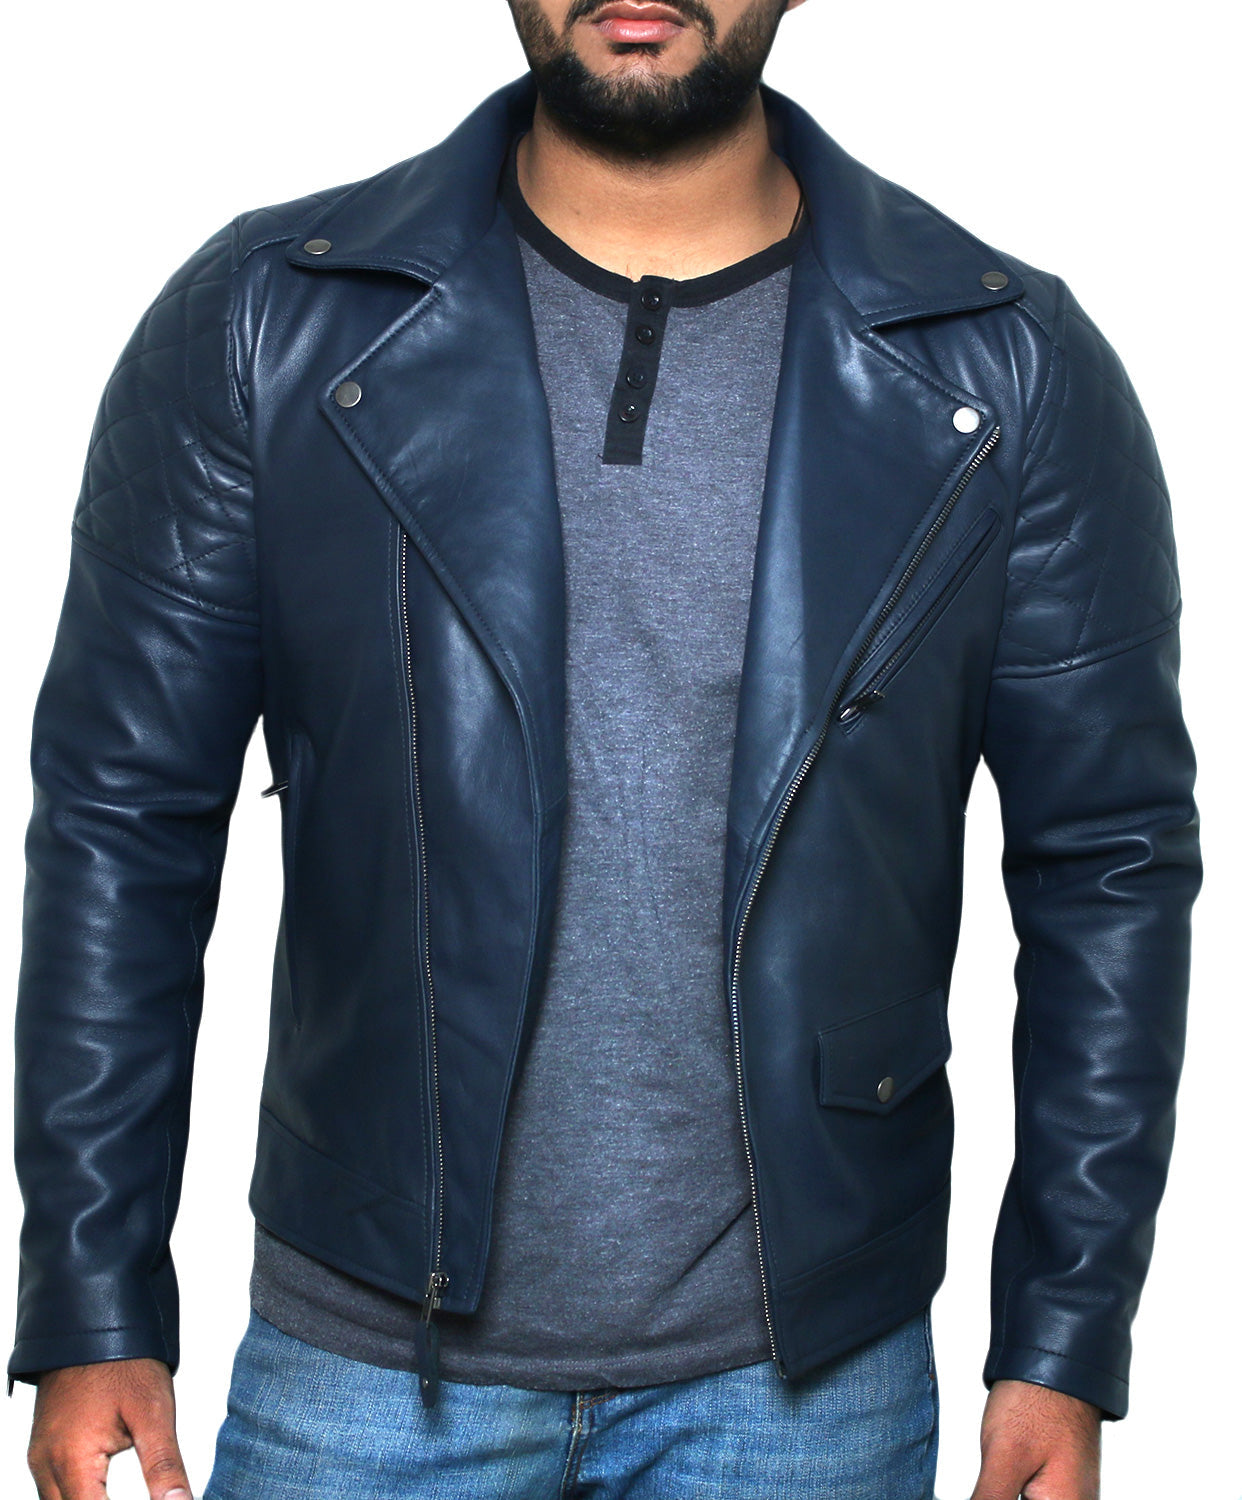 Leather Jackets Hub Mens Genuine Lambskin Leather Jacket (Black, Double Rider Jacket) - 1501001